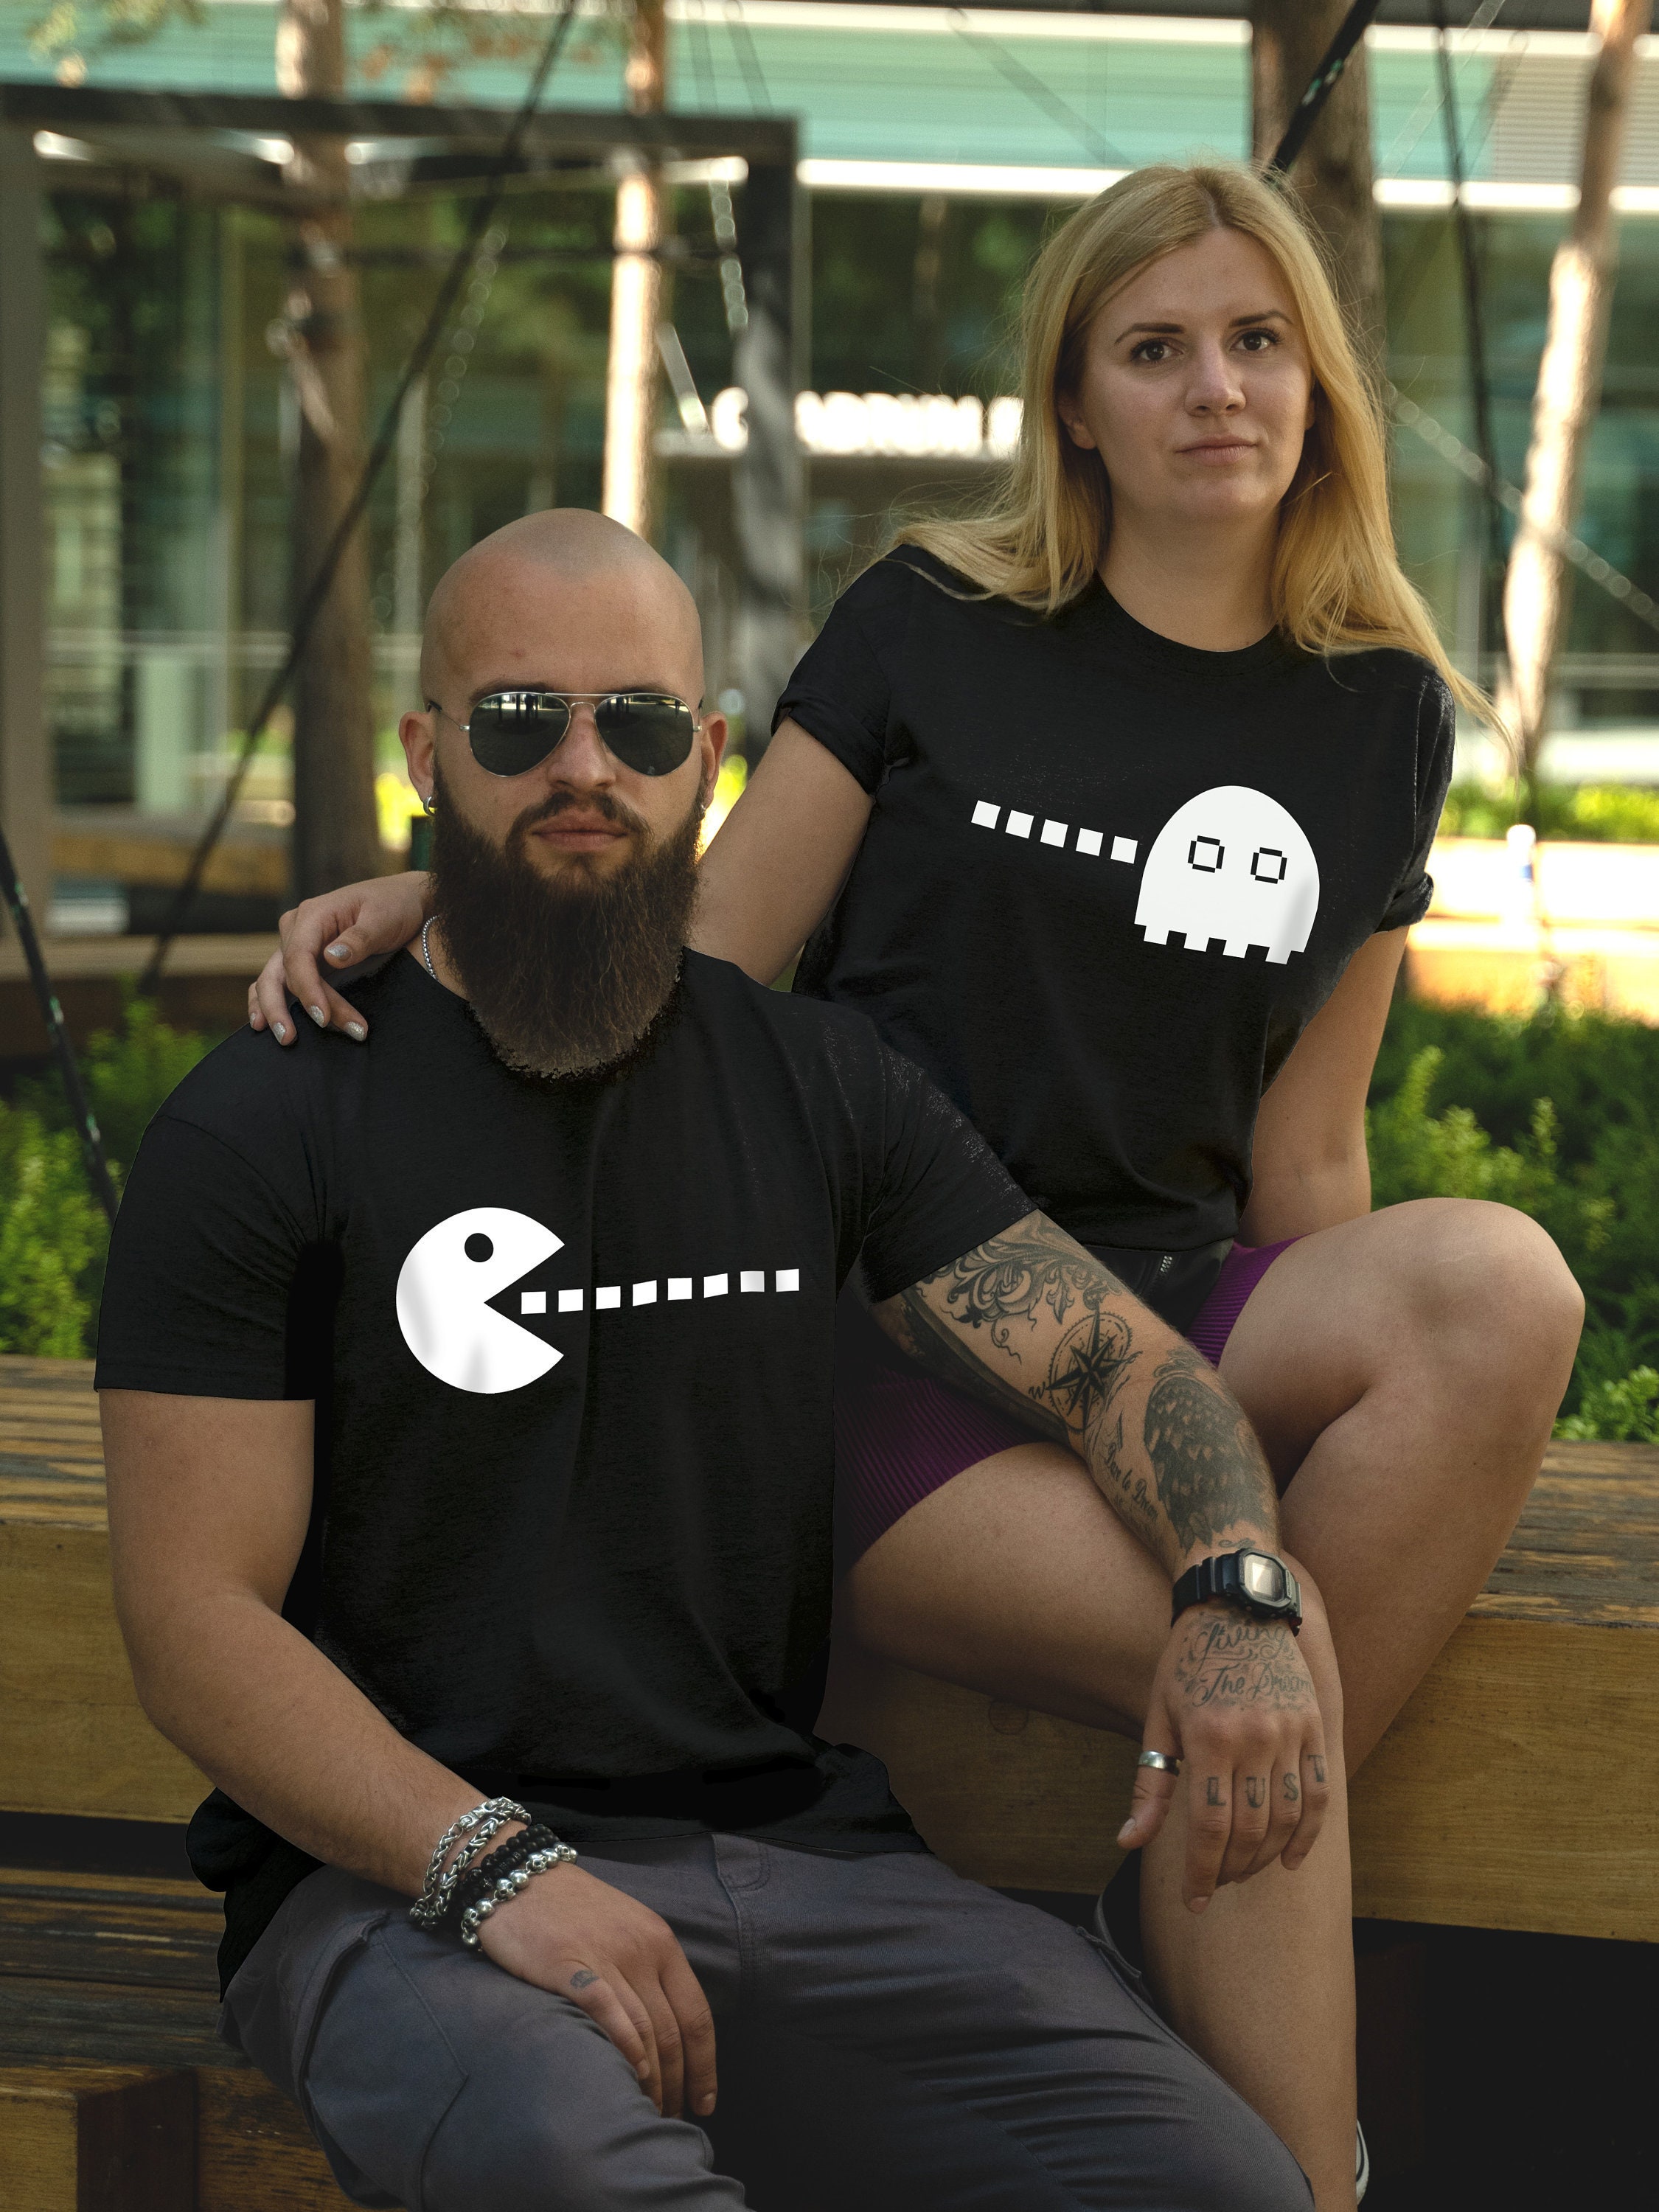 Discover Cadeau De couples, Cadeau De Mariage T-Shirt Couple Drôle Pour Elle Et Lui T-Shirts Familiaux Assortis